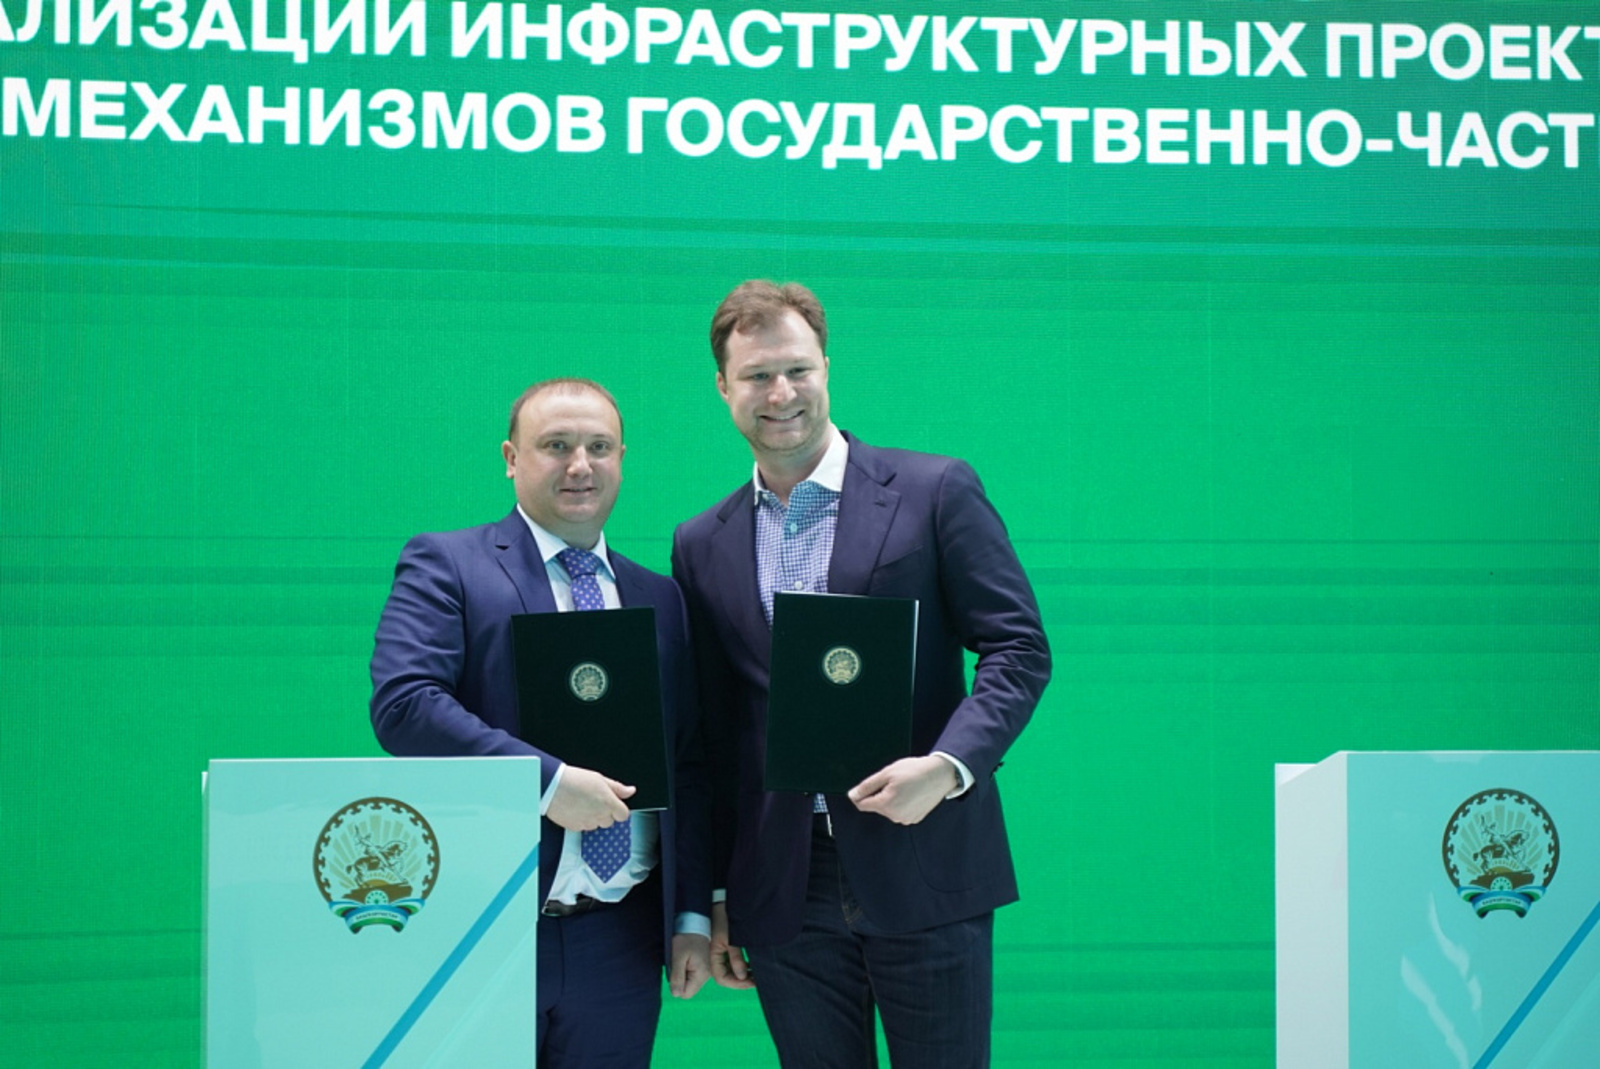 Башкирия будет использовать цифровую платформу «Росинфра» в проектах государственно-частного партнерства